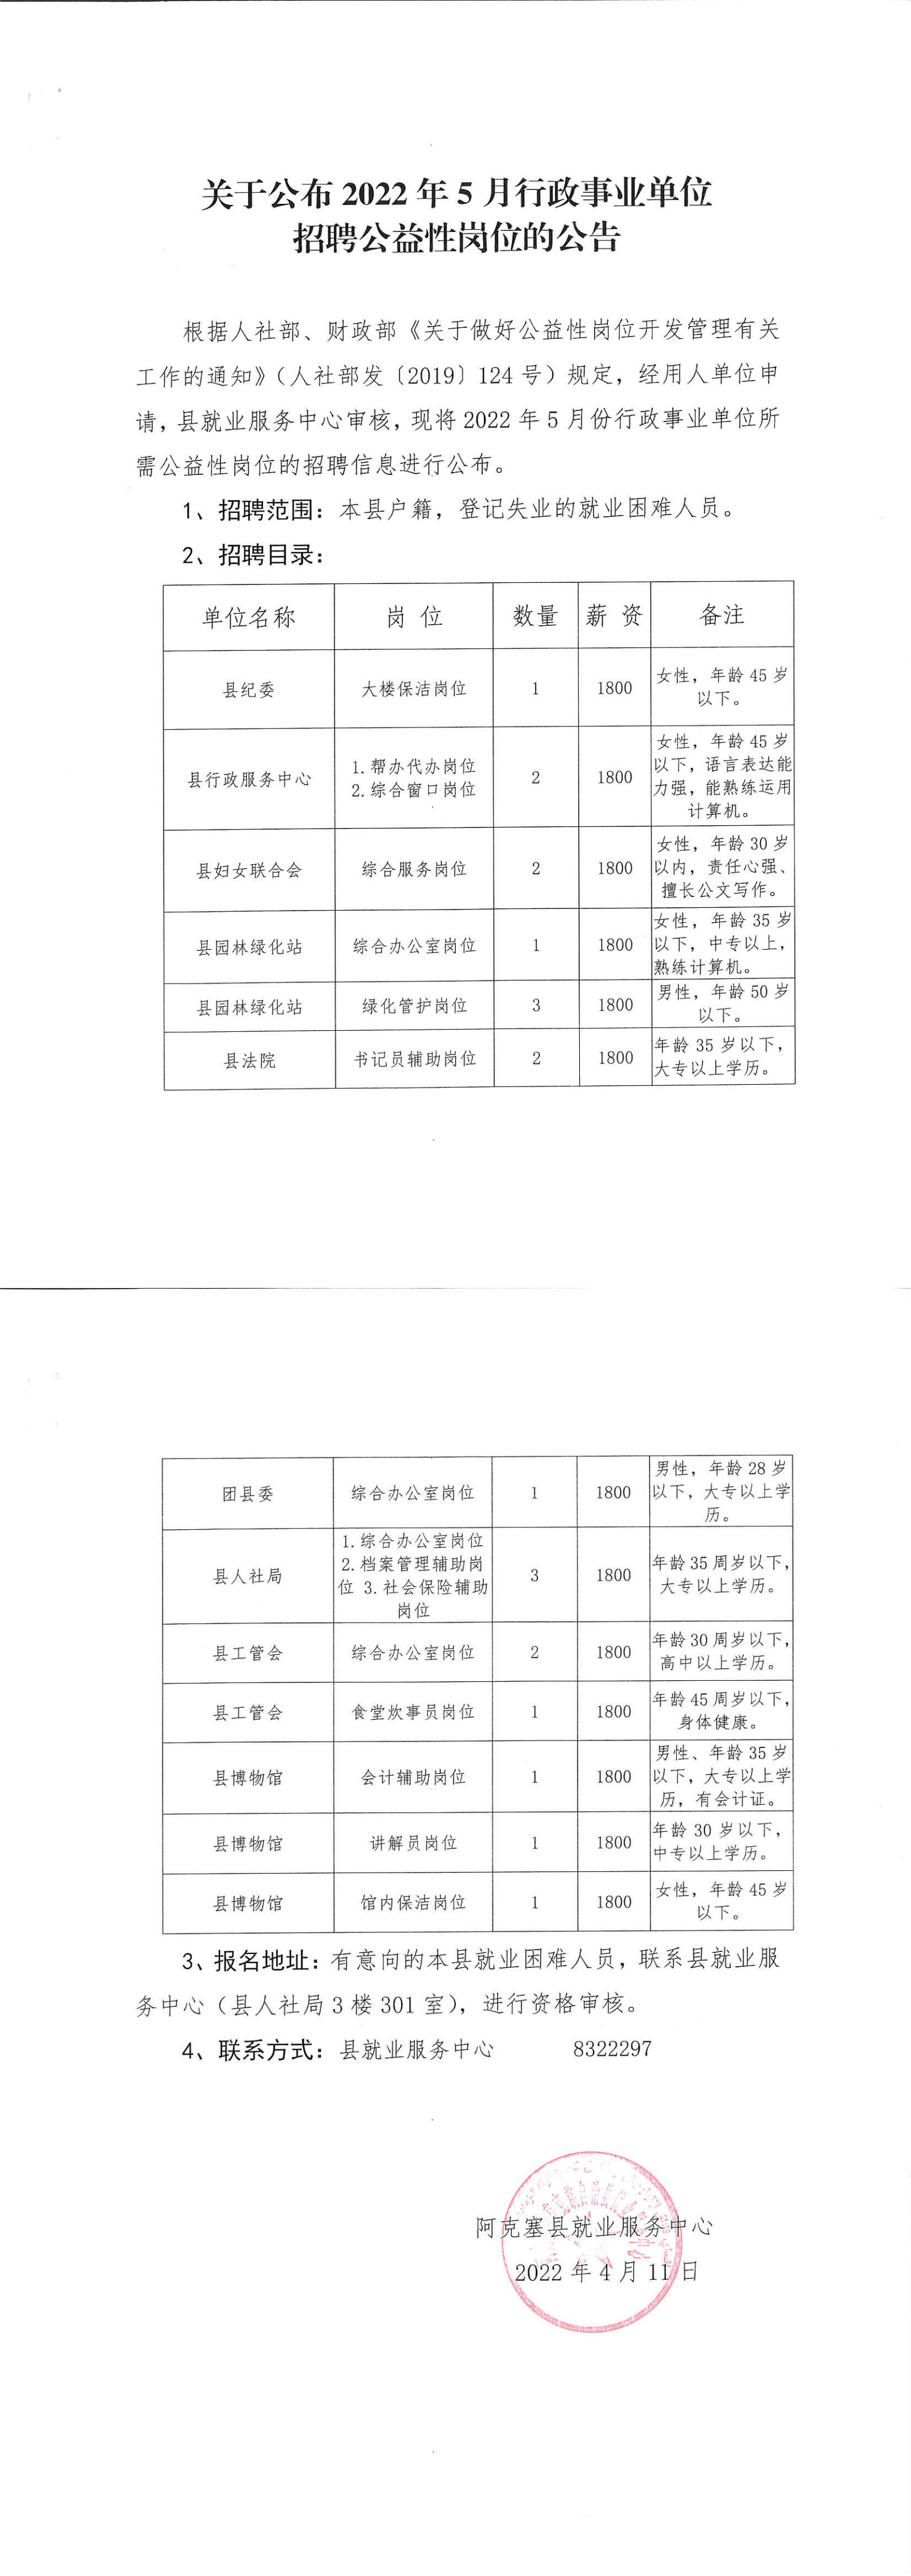 2022年5月甘肃酒泉阿克塞县行政事业单位招聘公益性岗位21人公告